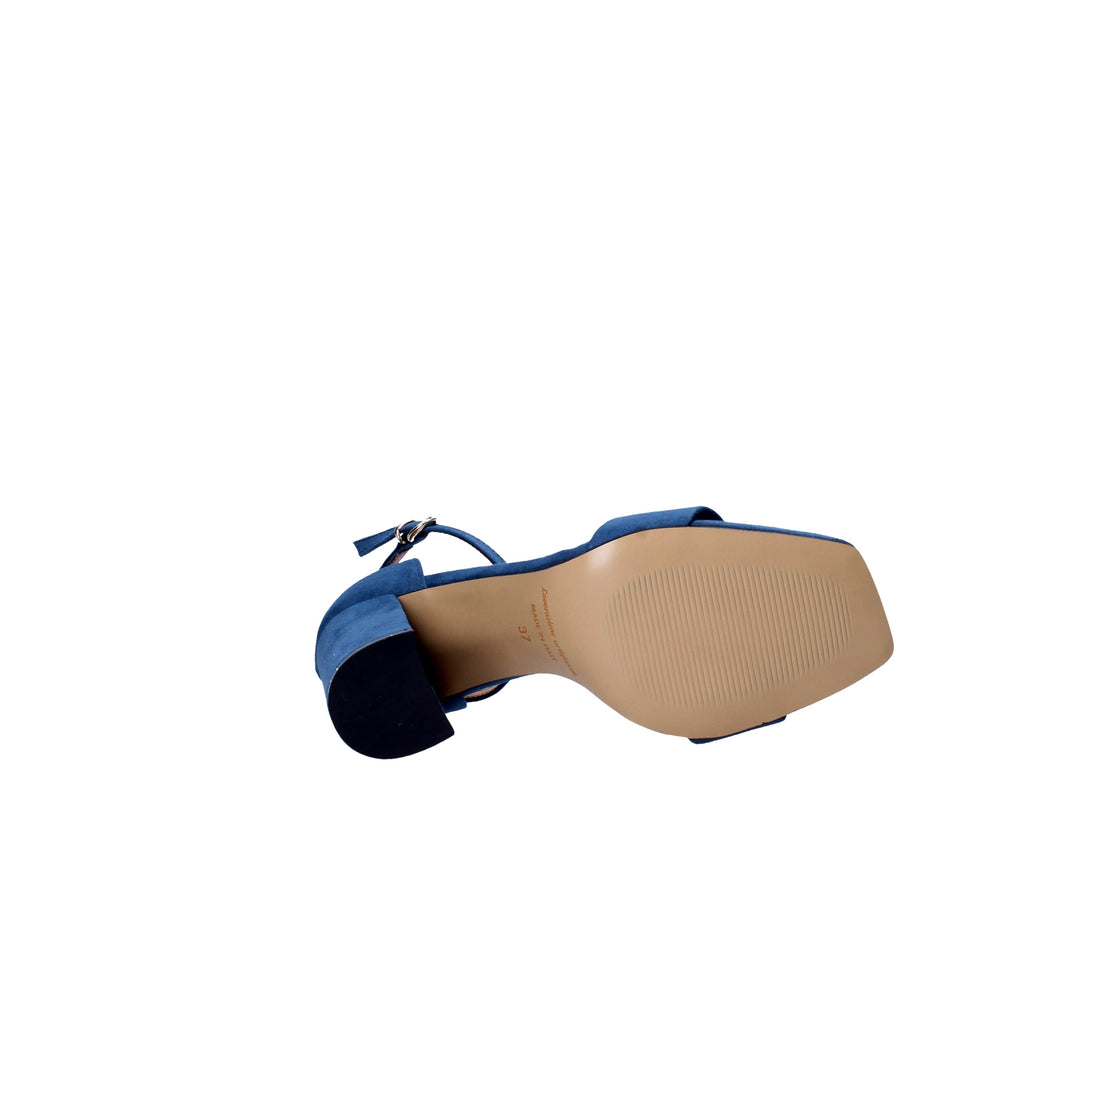 Sandali tacco Blu Scuro Grace Shoes